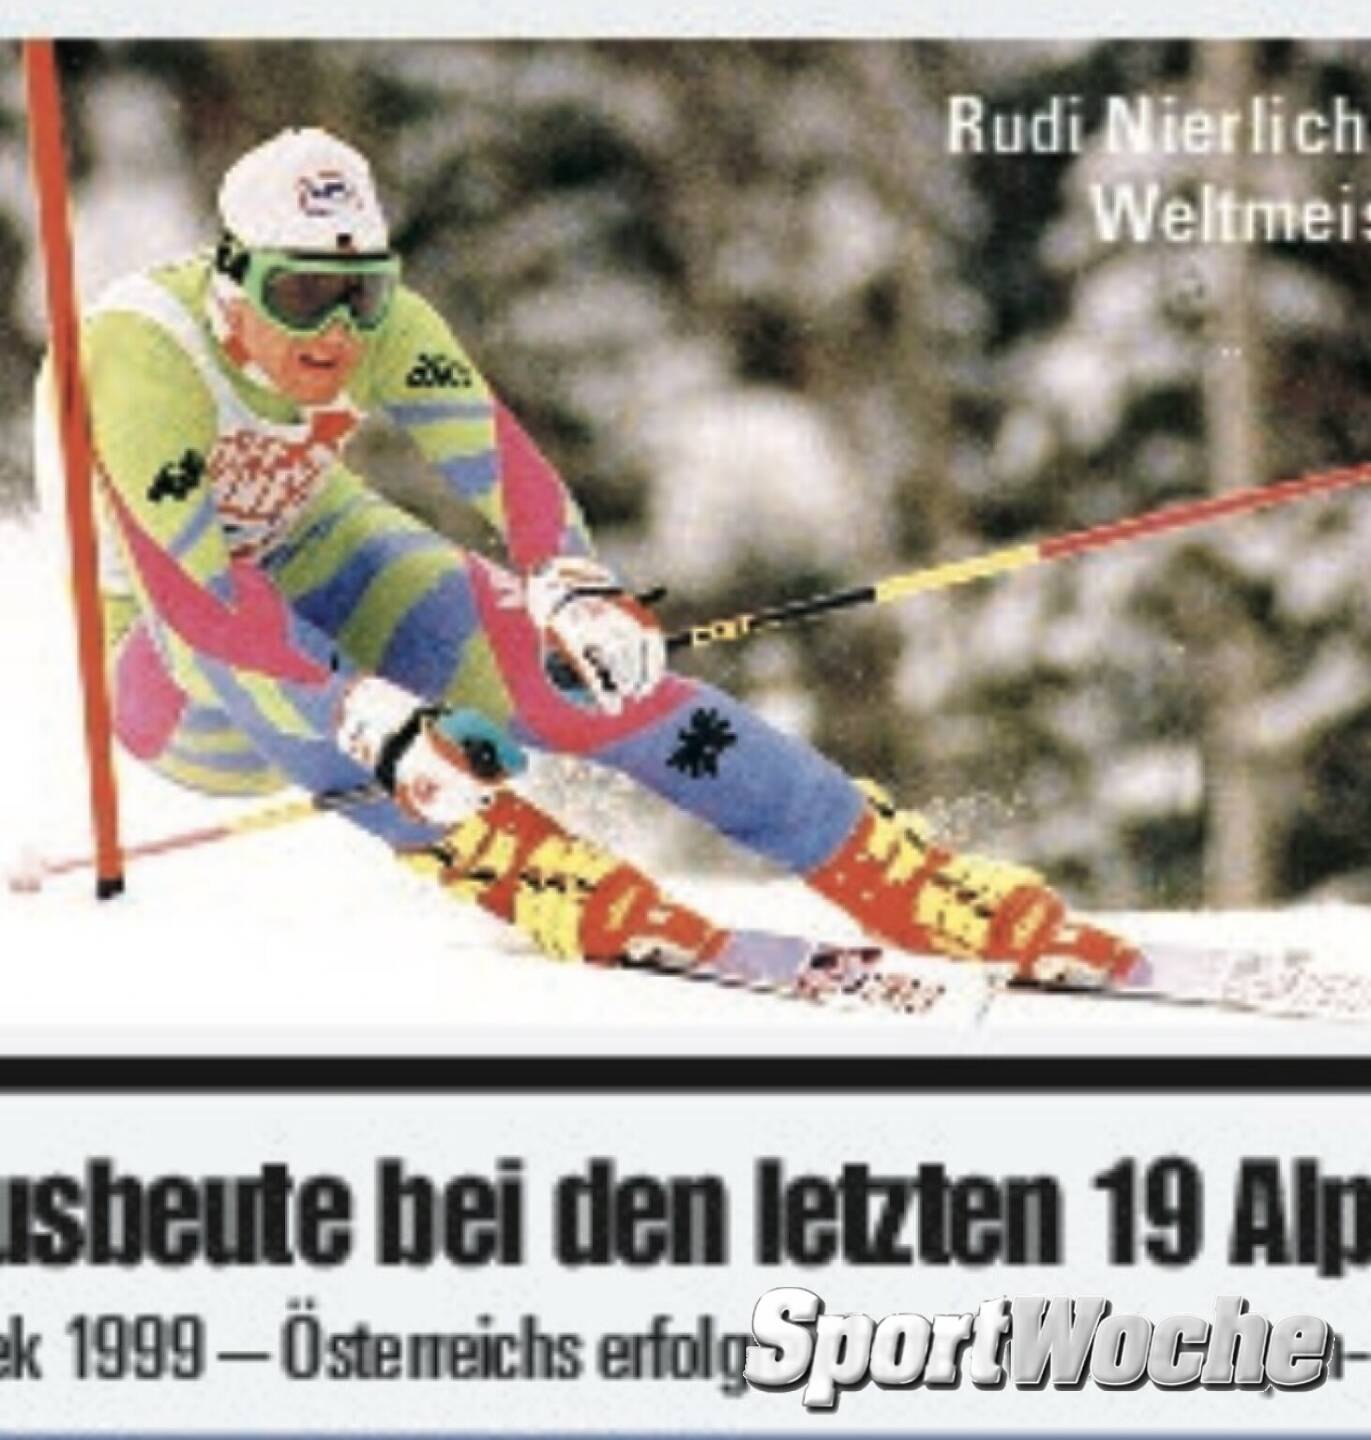 09.02.2022: Heue 33 Jahre her: Der unvergessliche #rudinierlich holte 1989 im WM-#rtl von @vail.colorado Gold, er wurde in diesem Jahr auch @sporthilfe.at #sportlerdesjahres #rip 